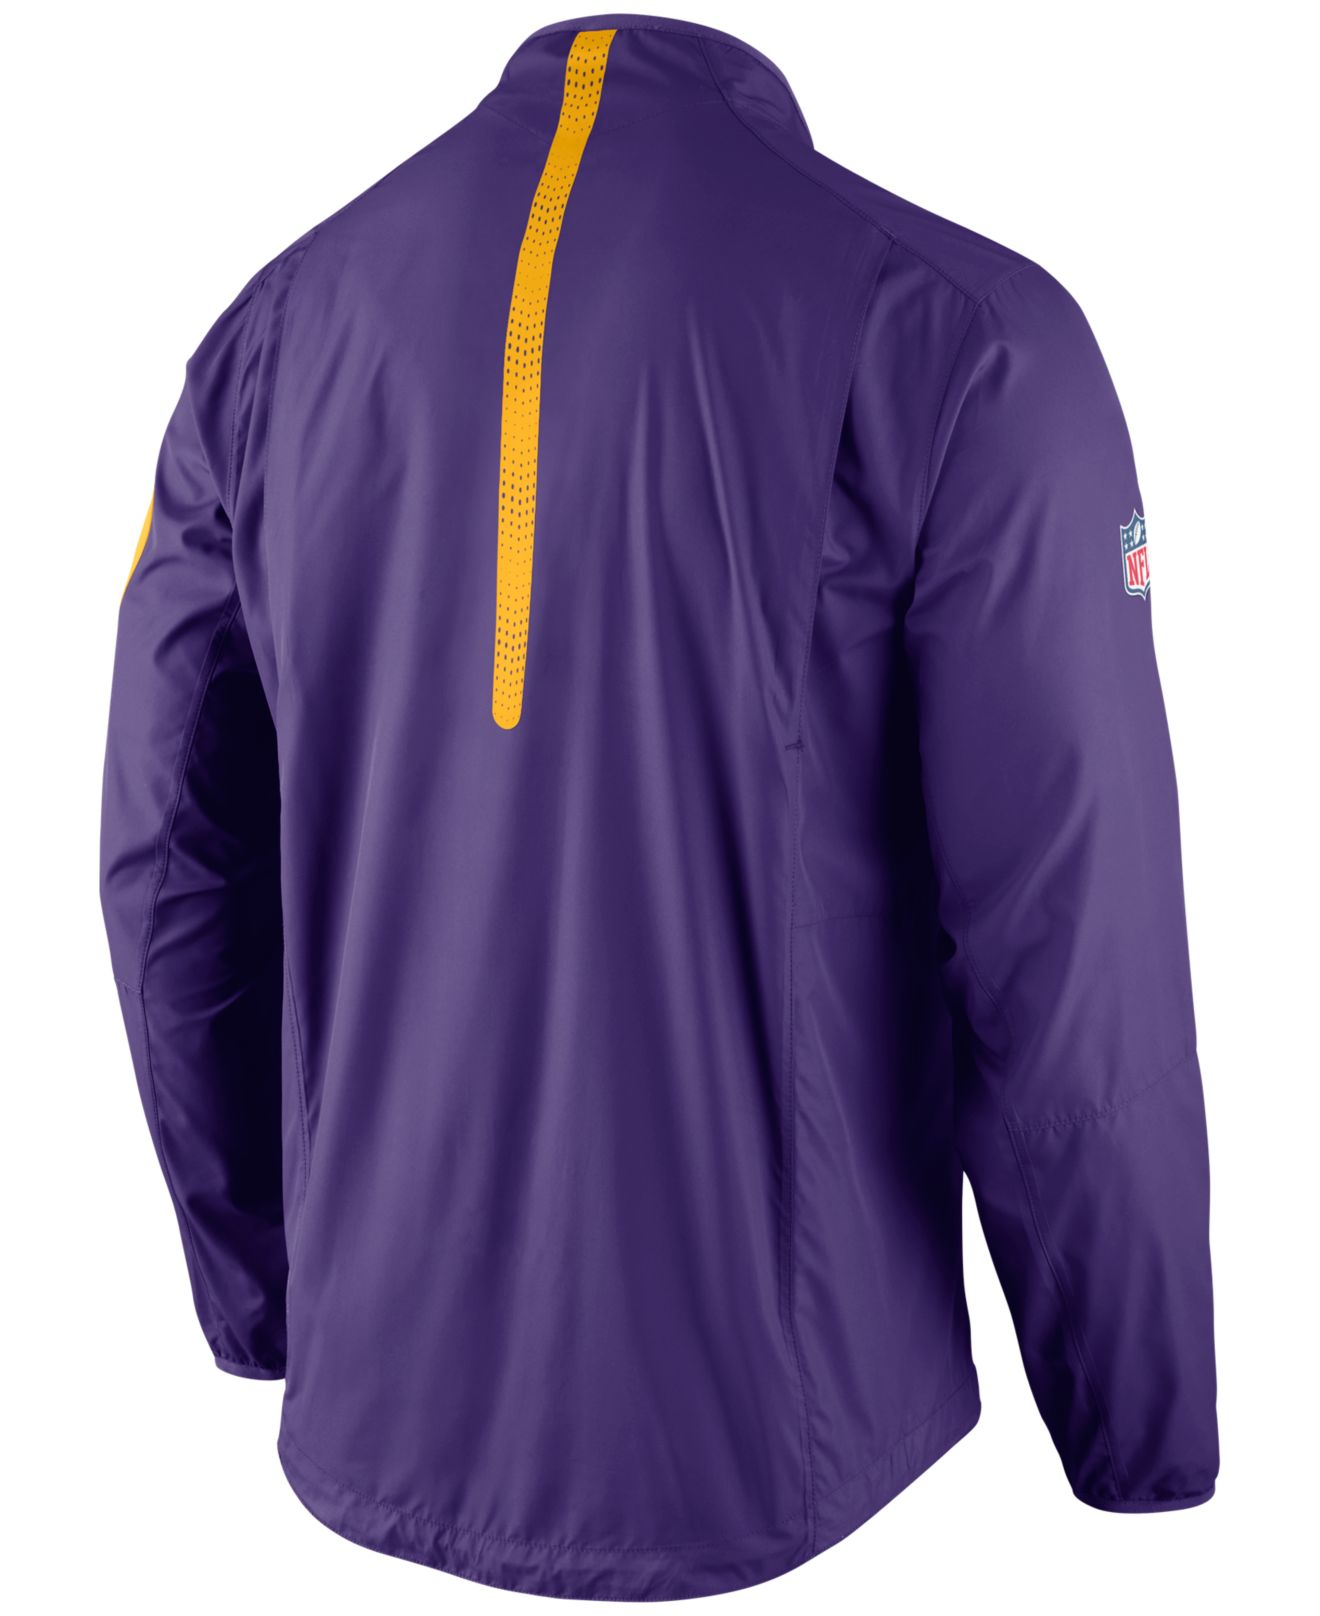 Lyst - Nike Men's Minnesota Vikings Lockdown Half-zip Jacket in Purple ...